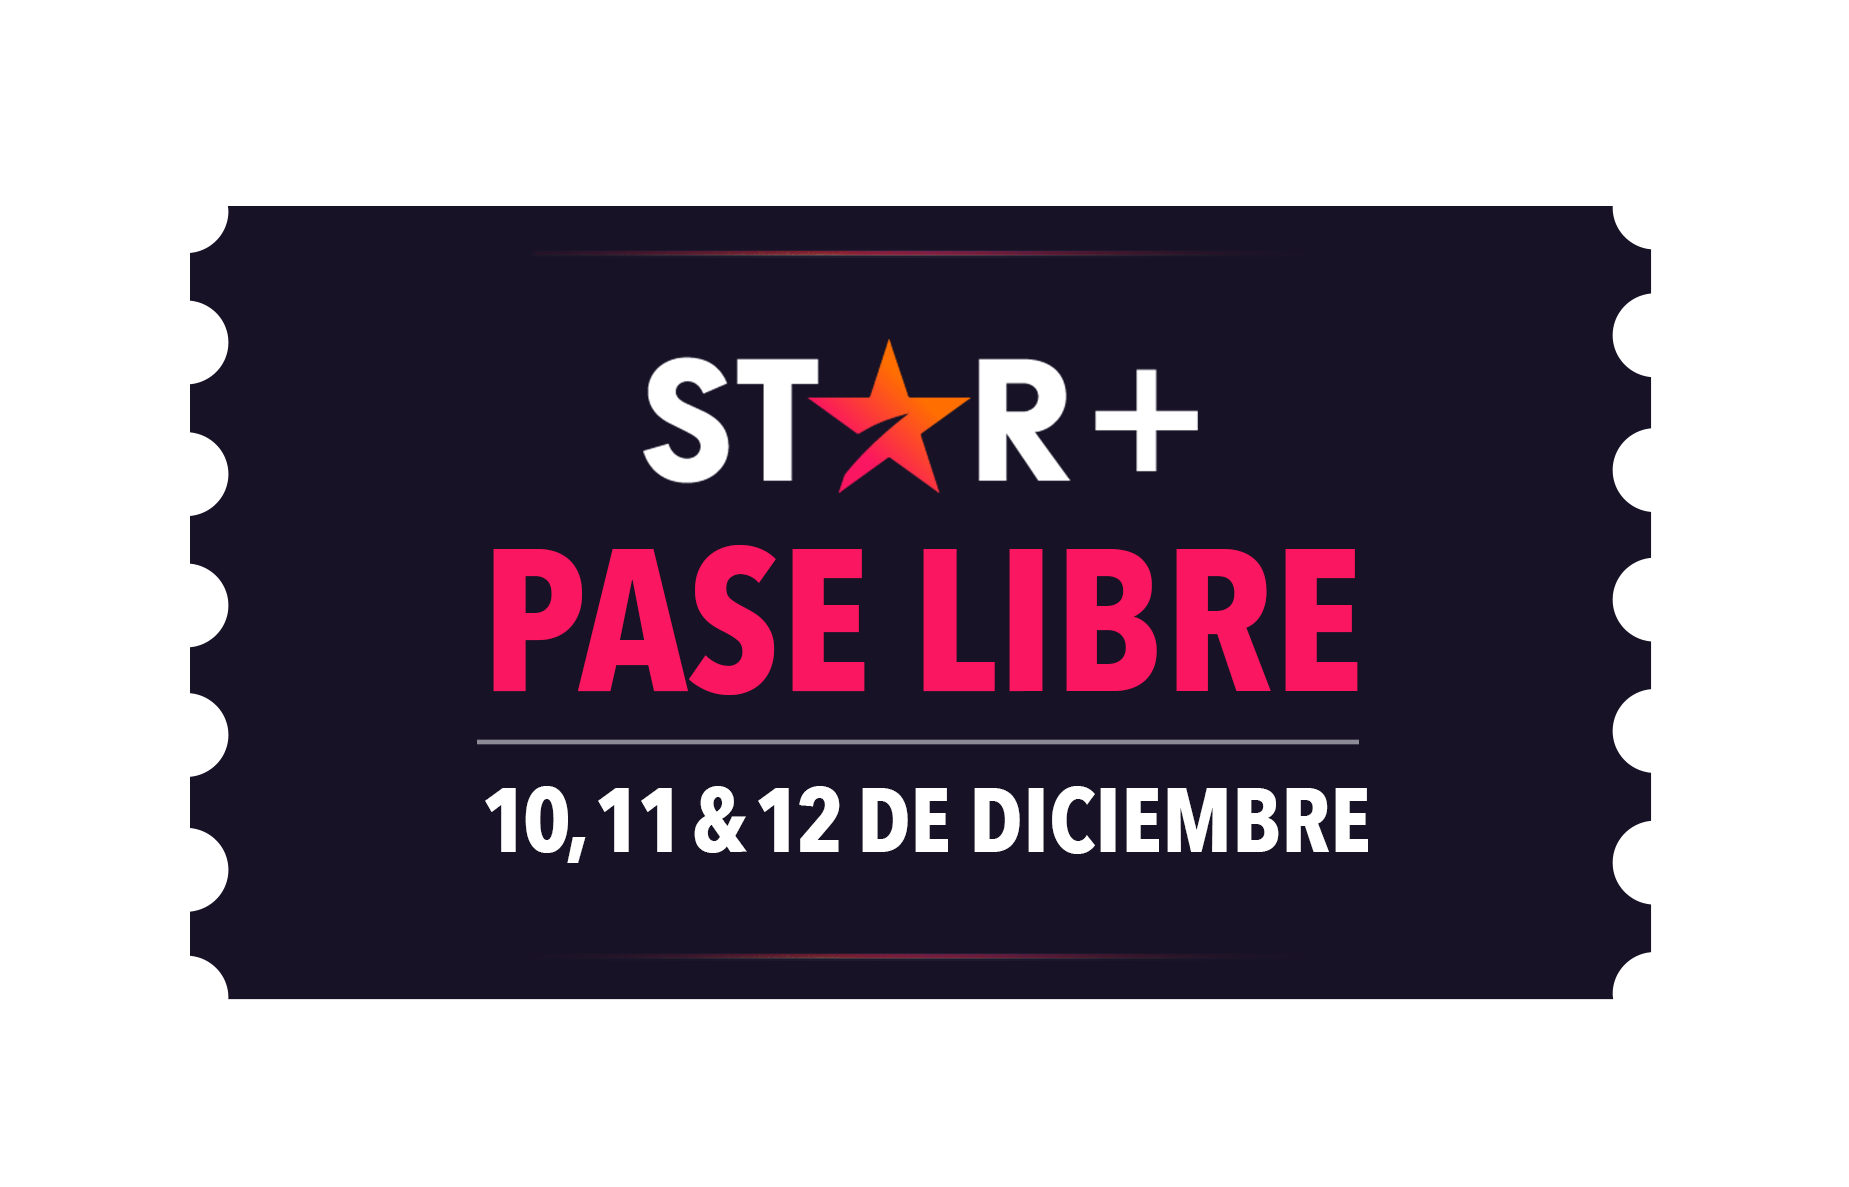 Foto de Star+ pase libre: una oportunidad única de acceso sin cargo a Star+